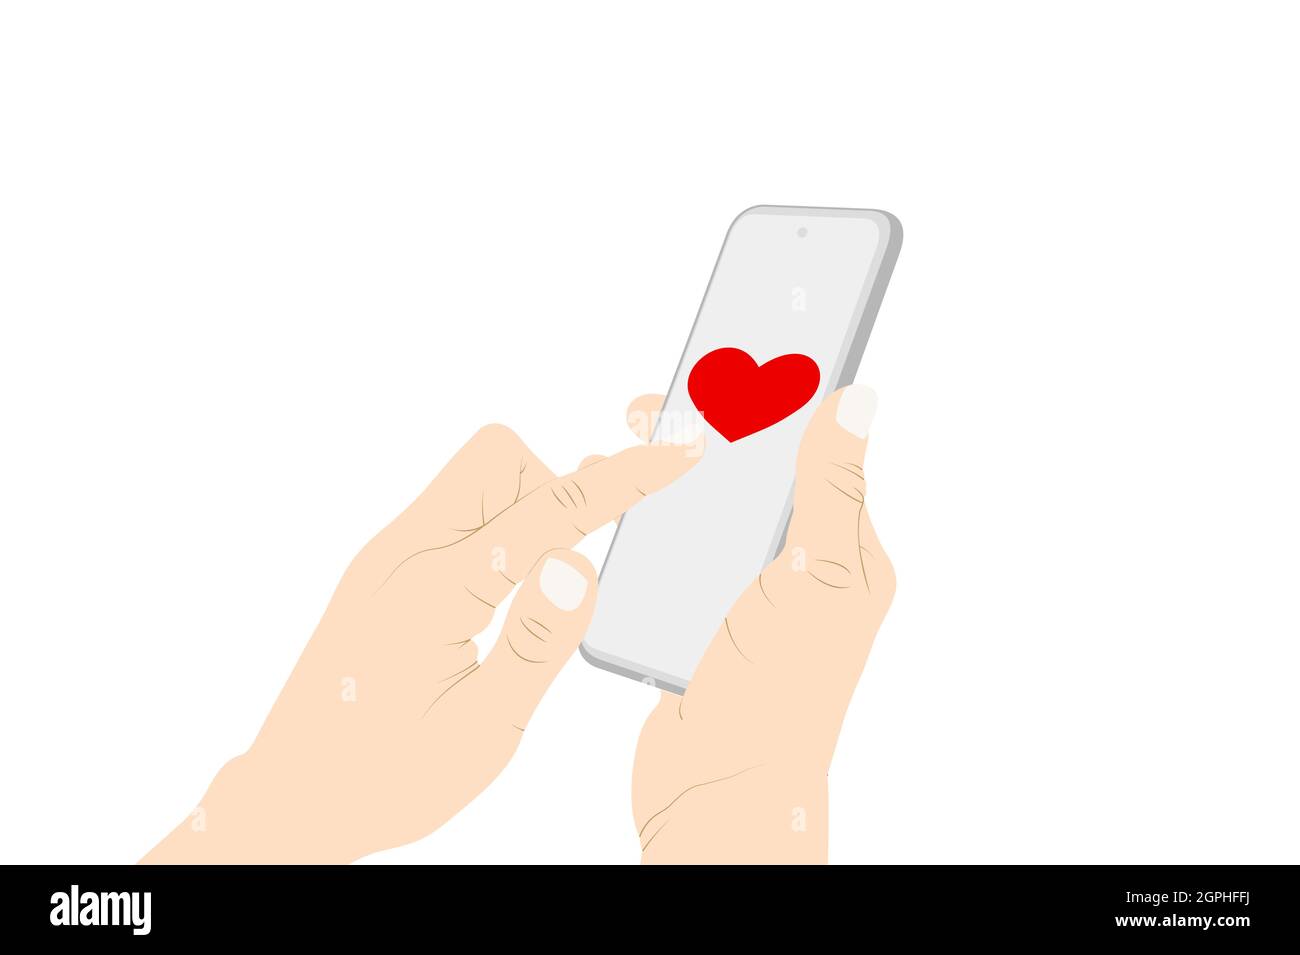 Envoi de coeur emoji avec le téléphone, flirt, symbole de coeur, main de femme envoi d'un message avec le téléphone. Illustration du stock vectoriel Illustration de Vecteur